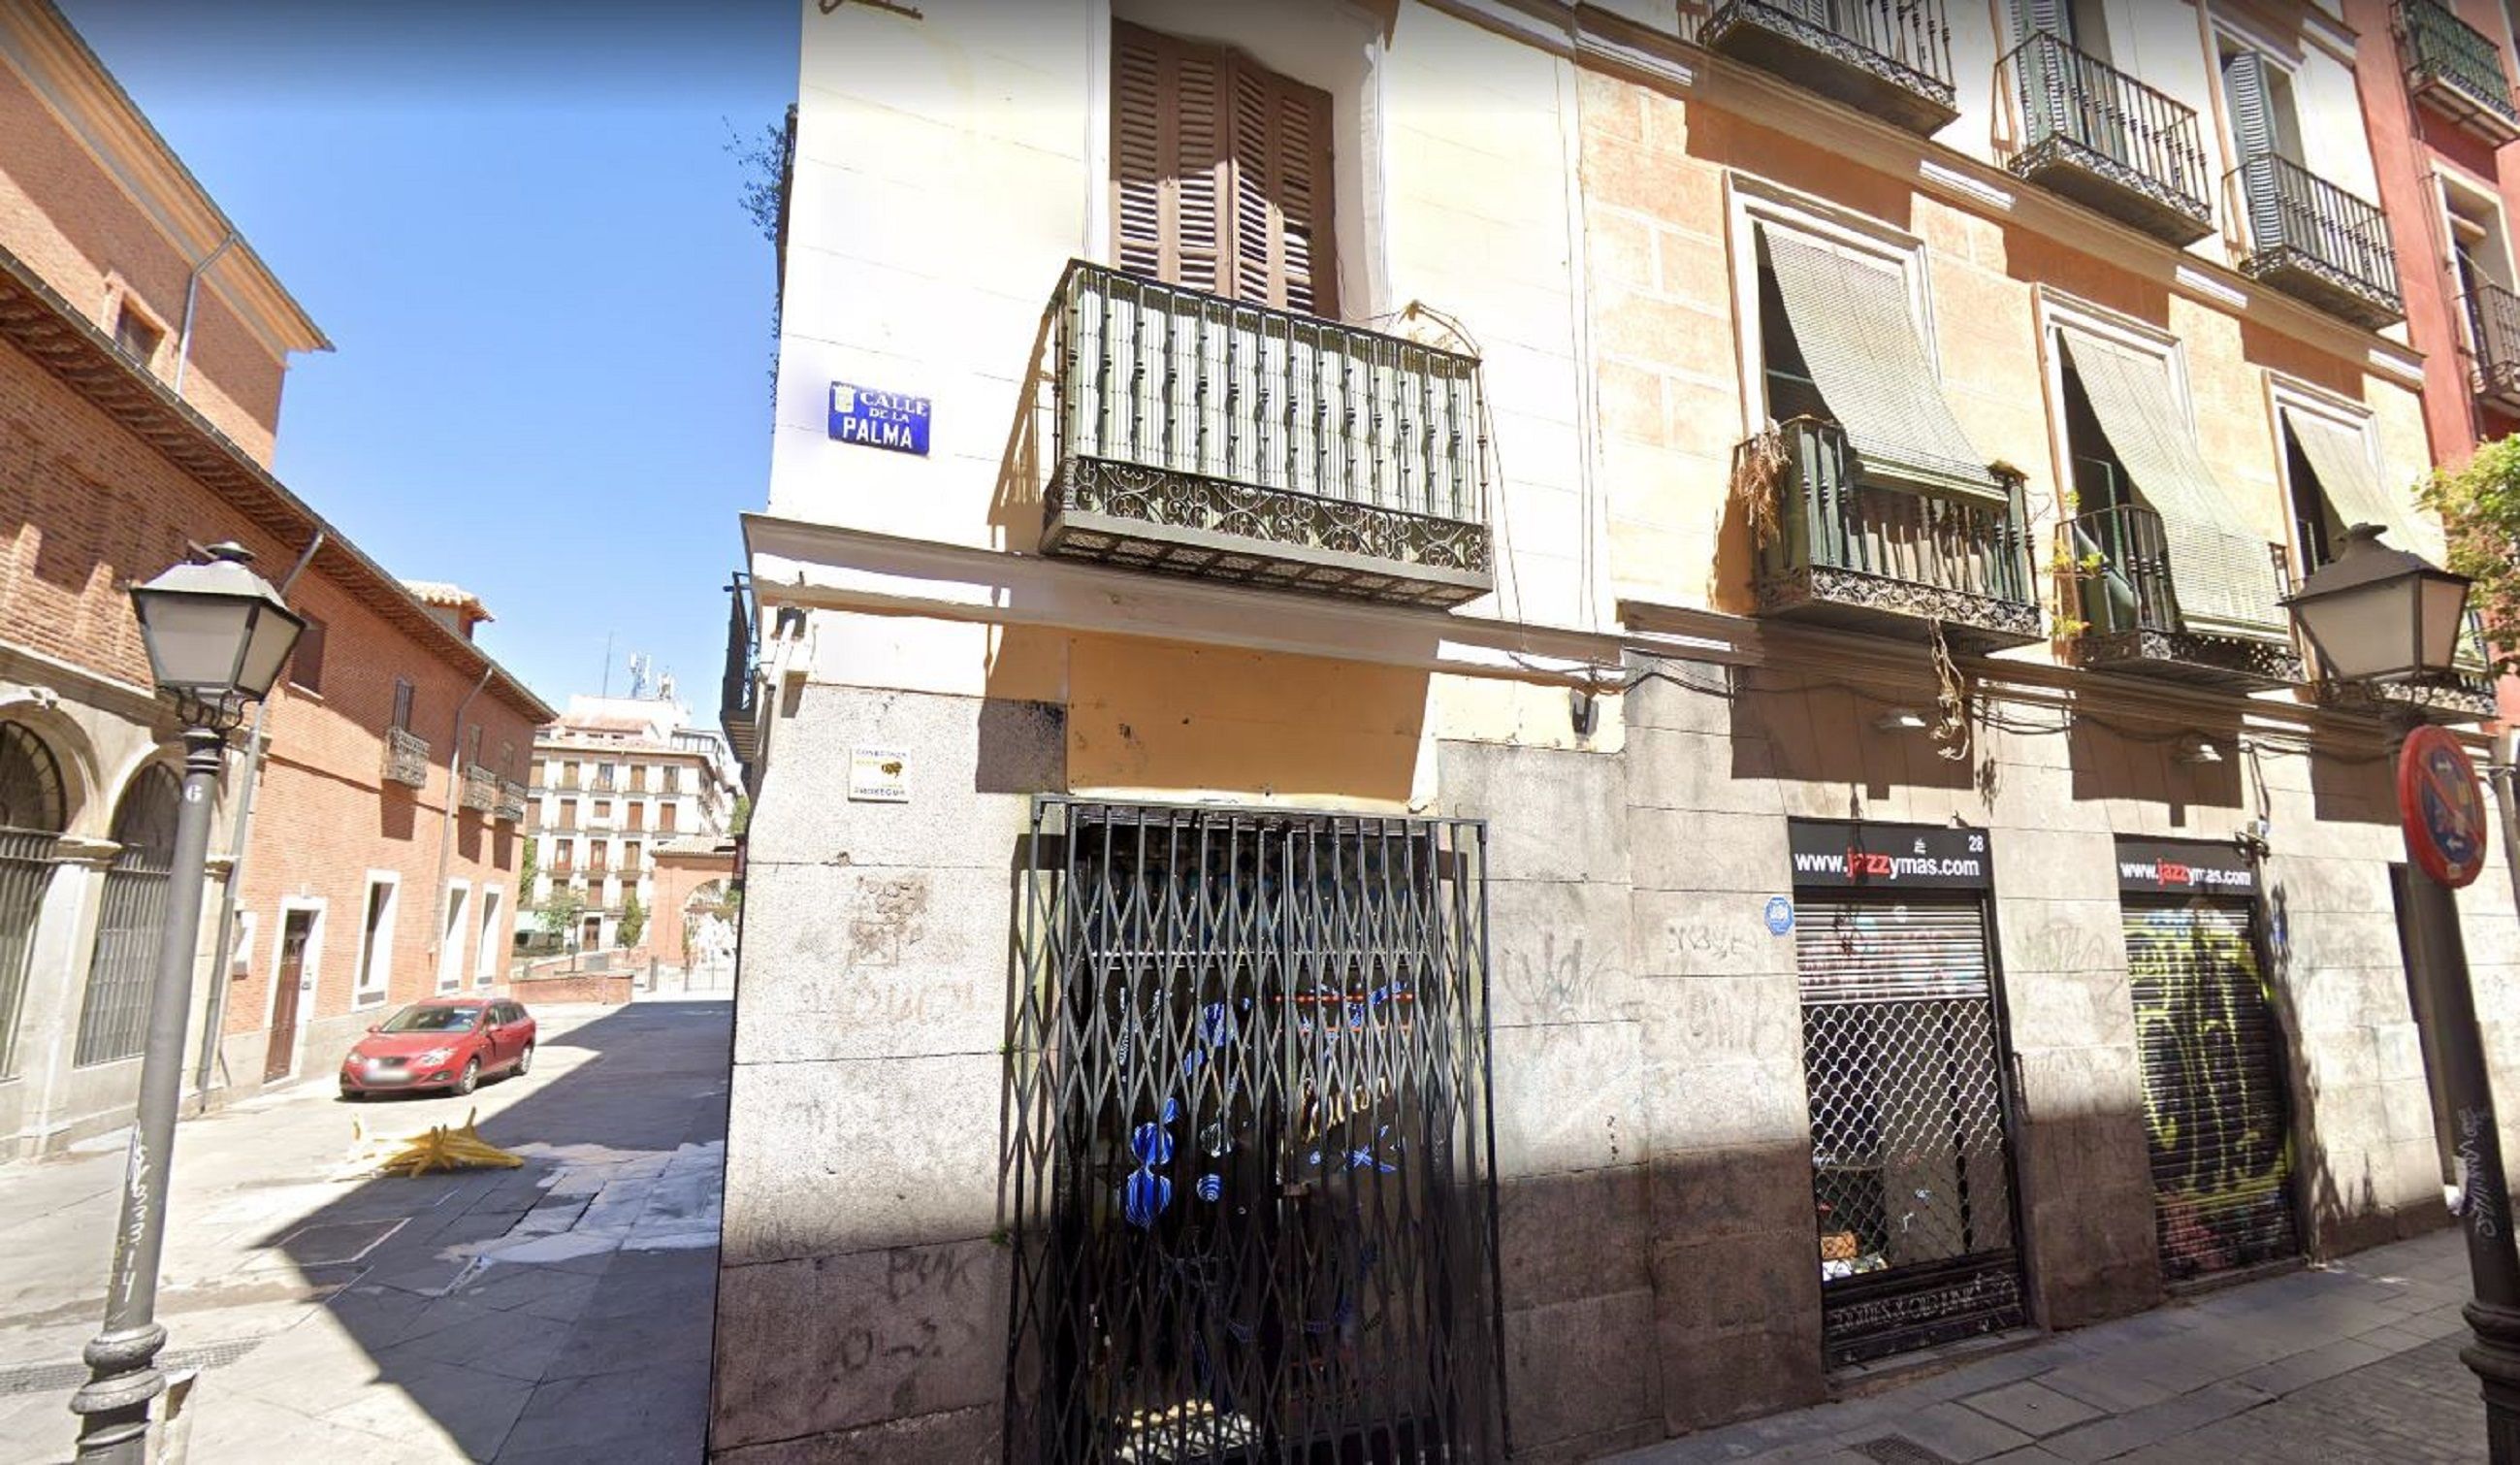 Carrer Palma Malasaña Madrid / Google Maps